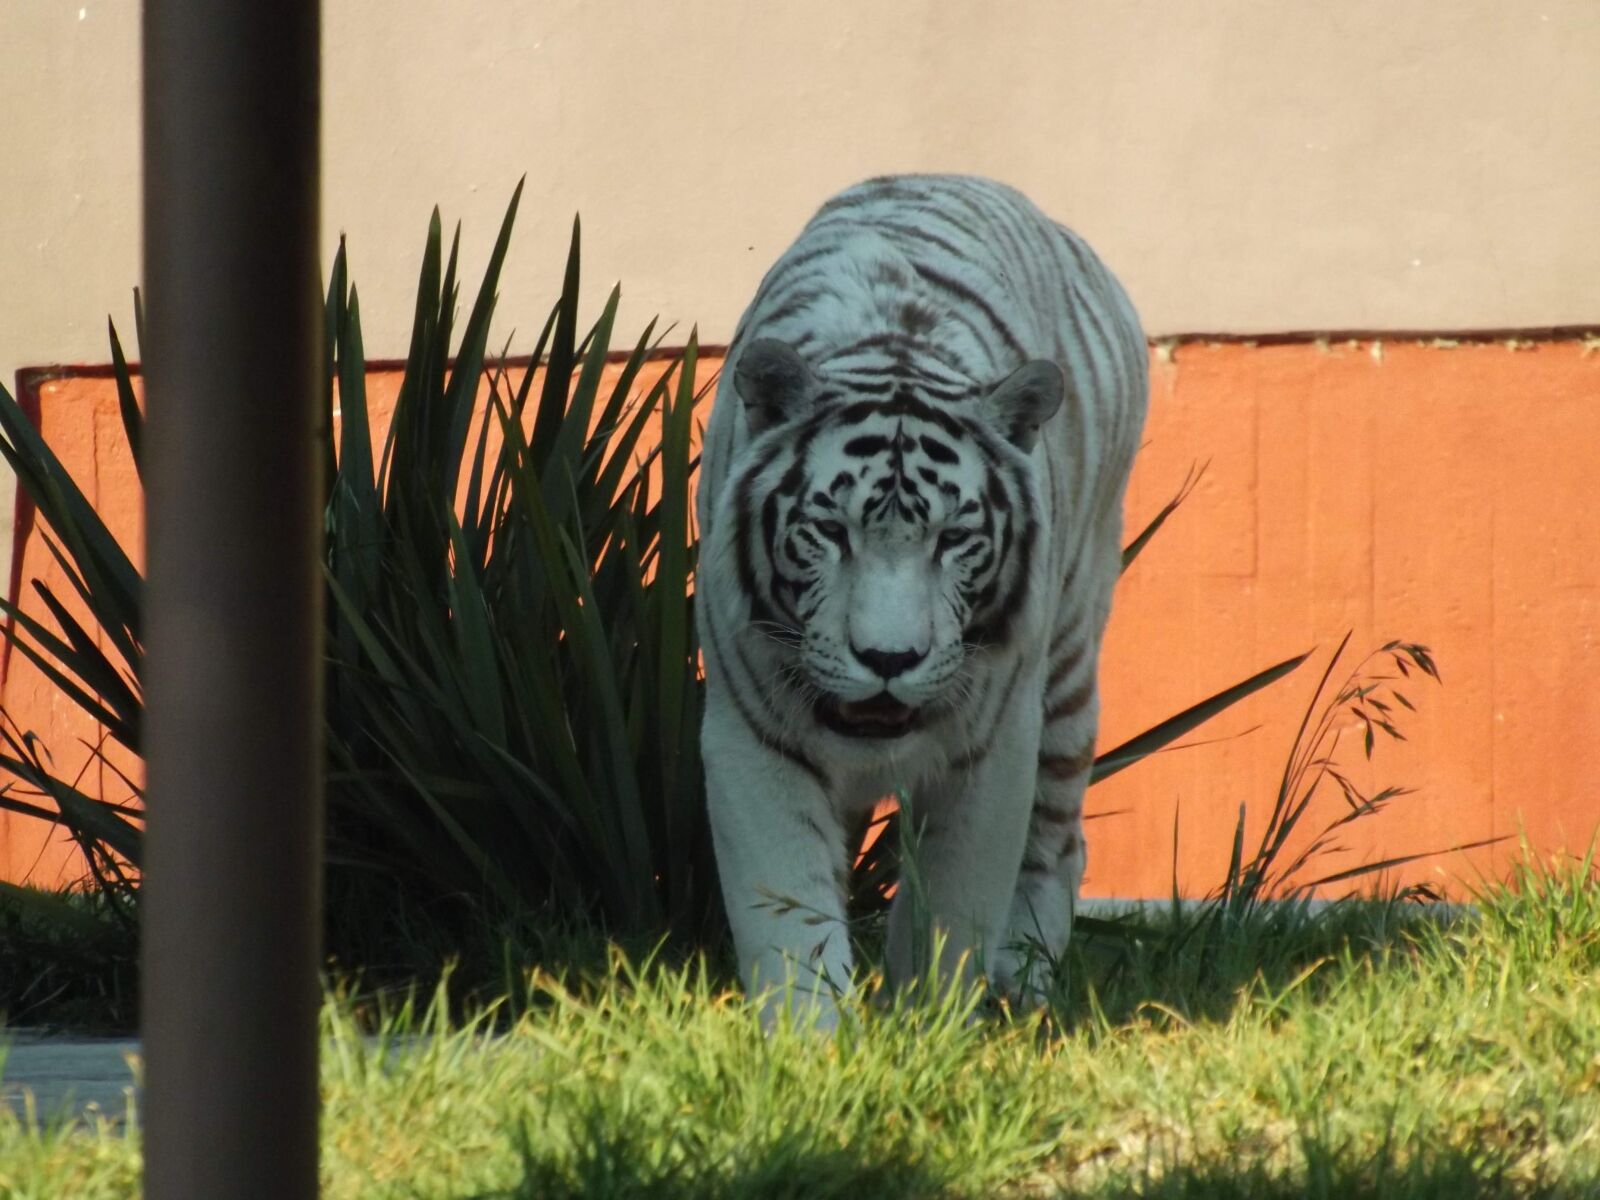 Fujifilm FinePix S4500 sample photo. Animal, tigre, tigre blanco photography